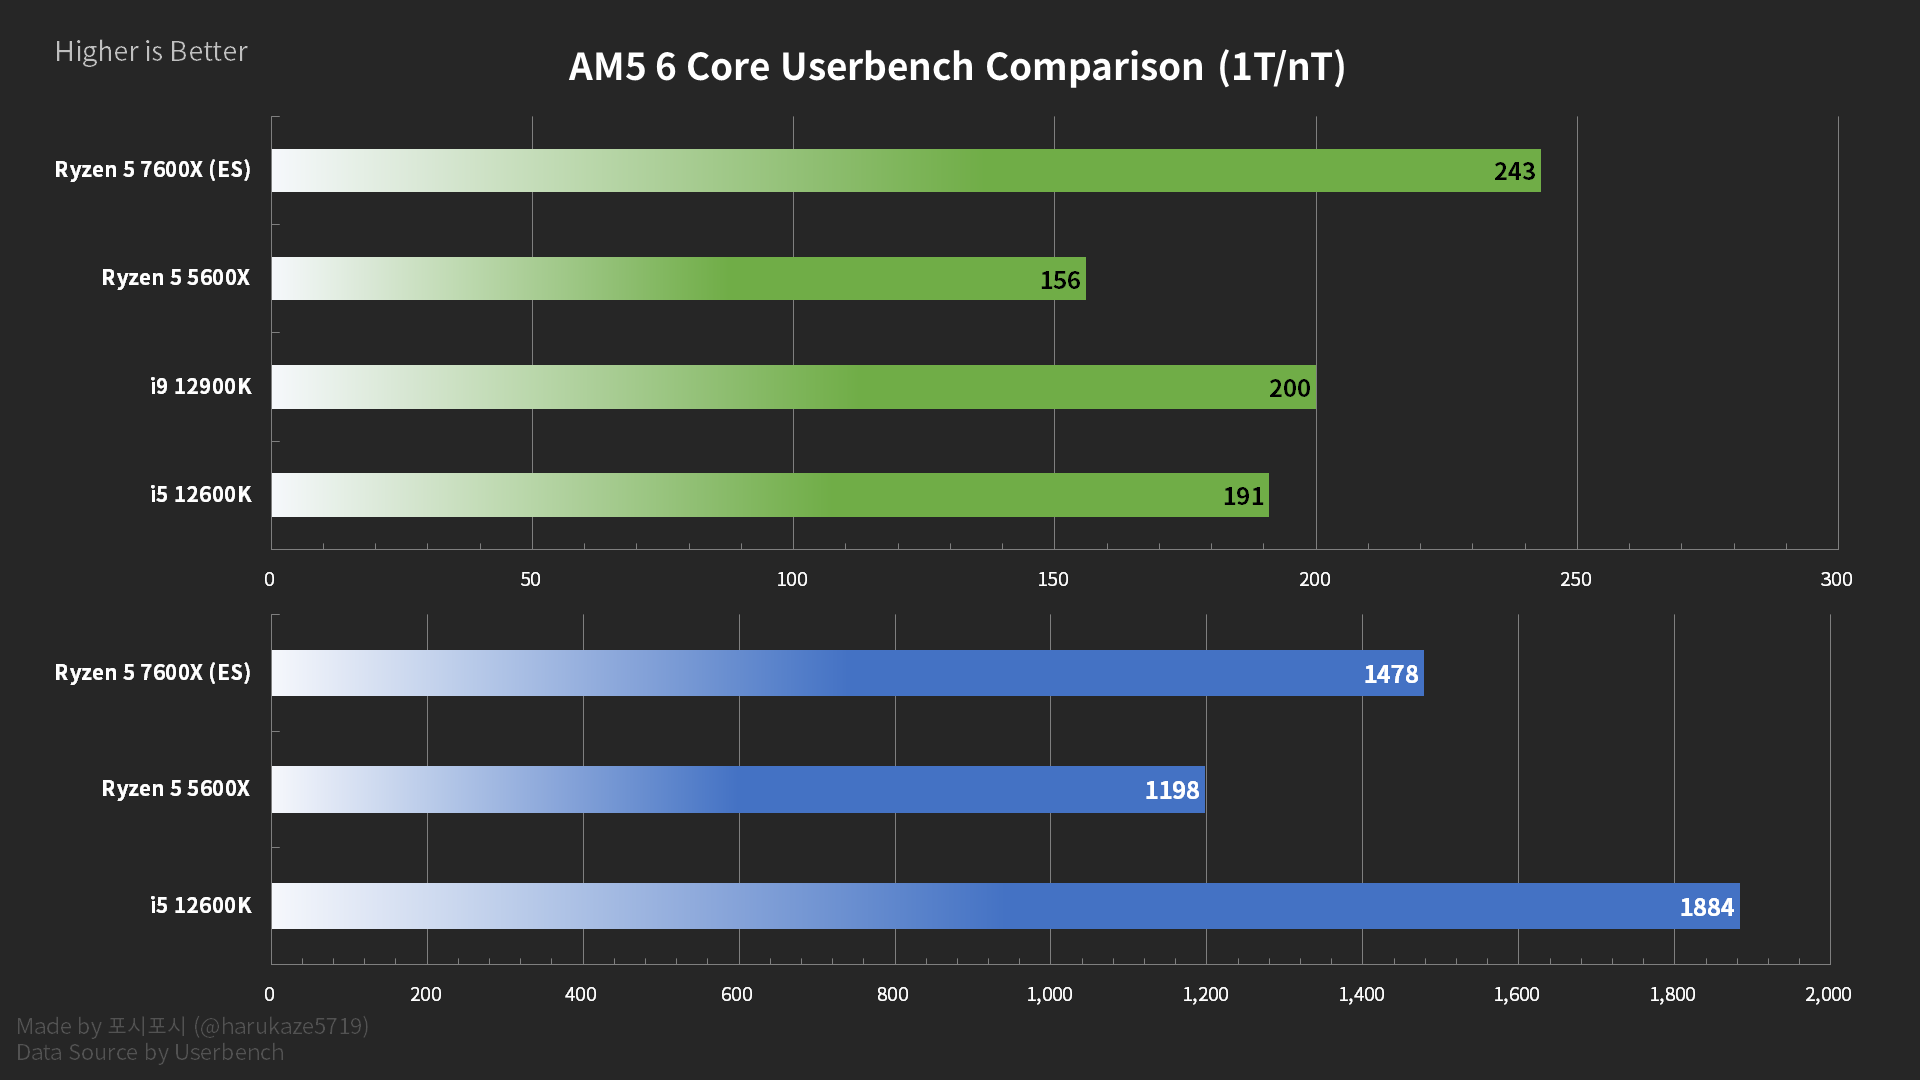 UserBenchmark: Nvidia RTX 4060-Ti vs 4070